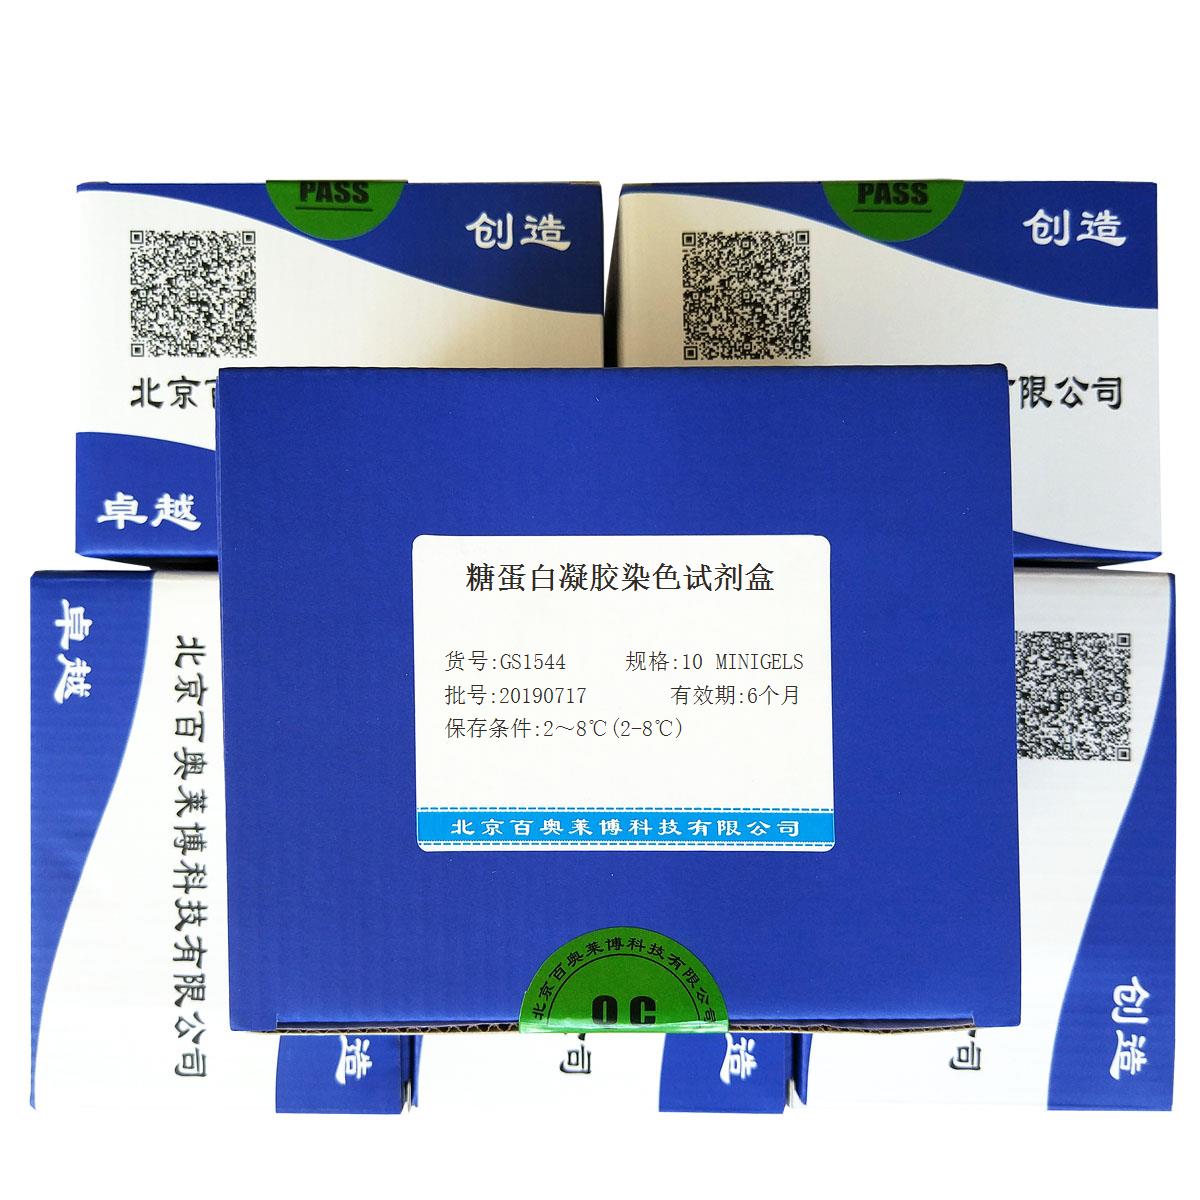 糖蛋白凝胶染色试剂盒北京供应商